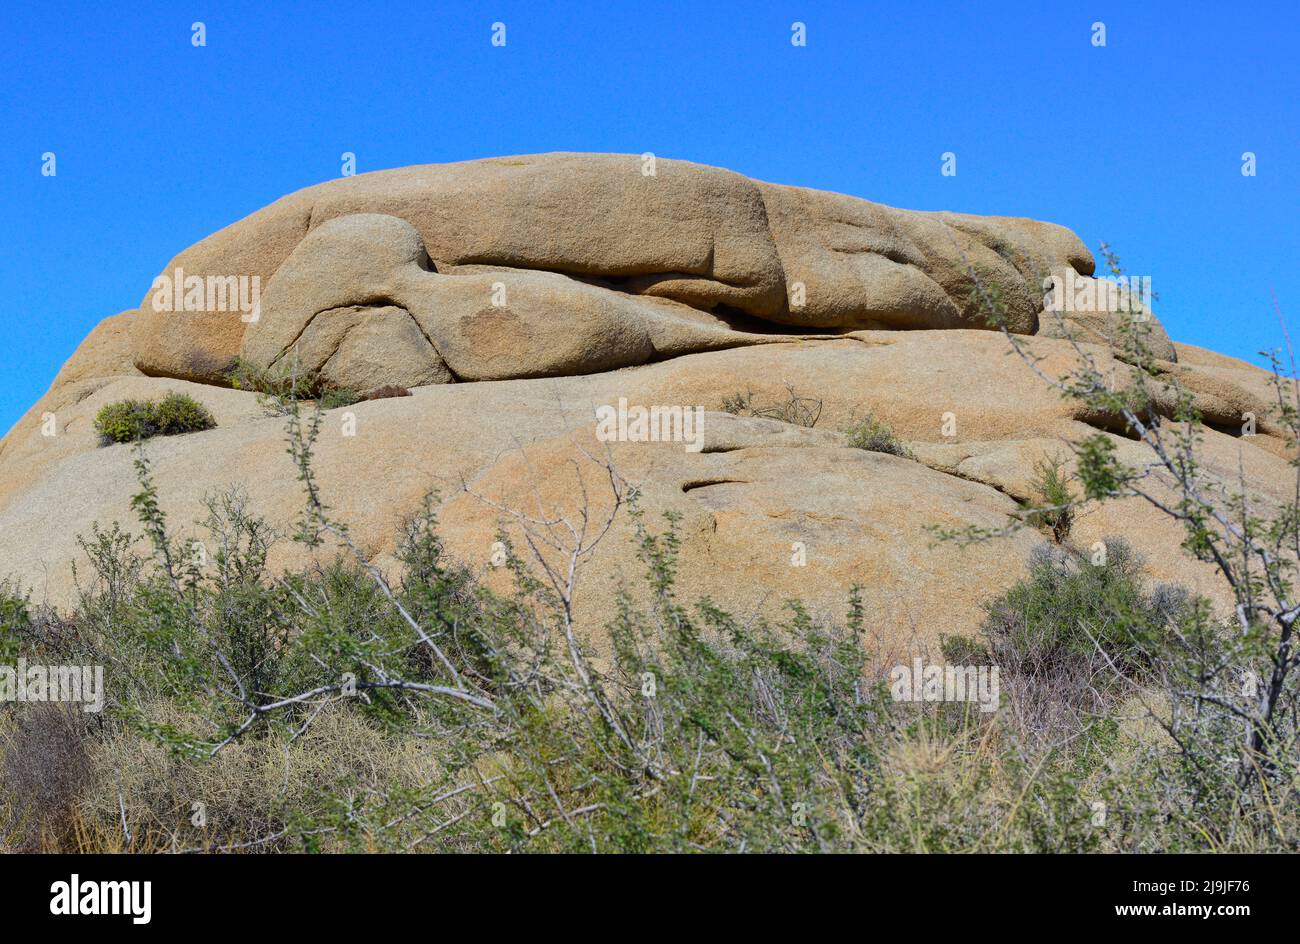 Las rocas únicas creadas por la tectónica de placas y erosión y vegetación única en el Parque Nacional Joshua Tree, en el desierto de Mojave, CA Foto de stock